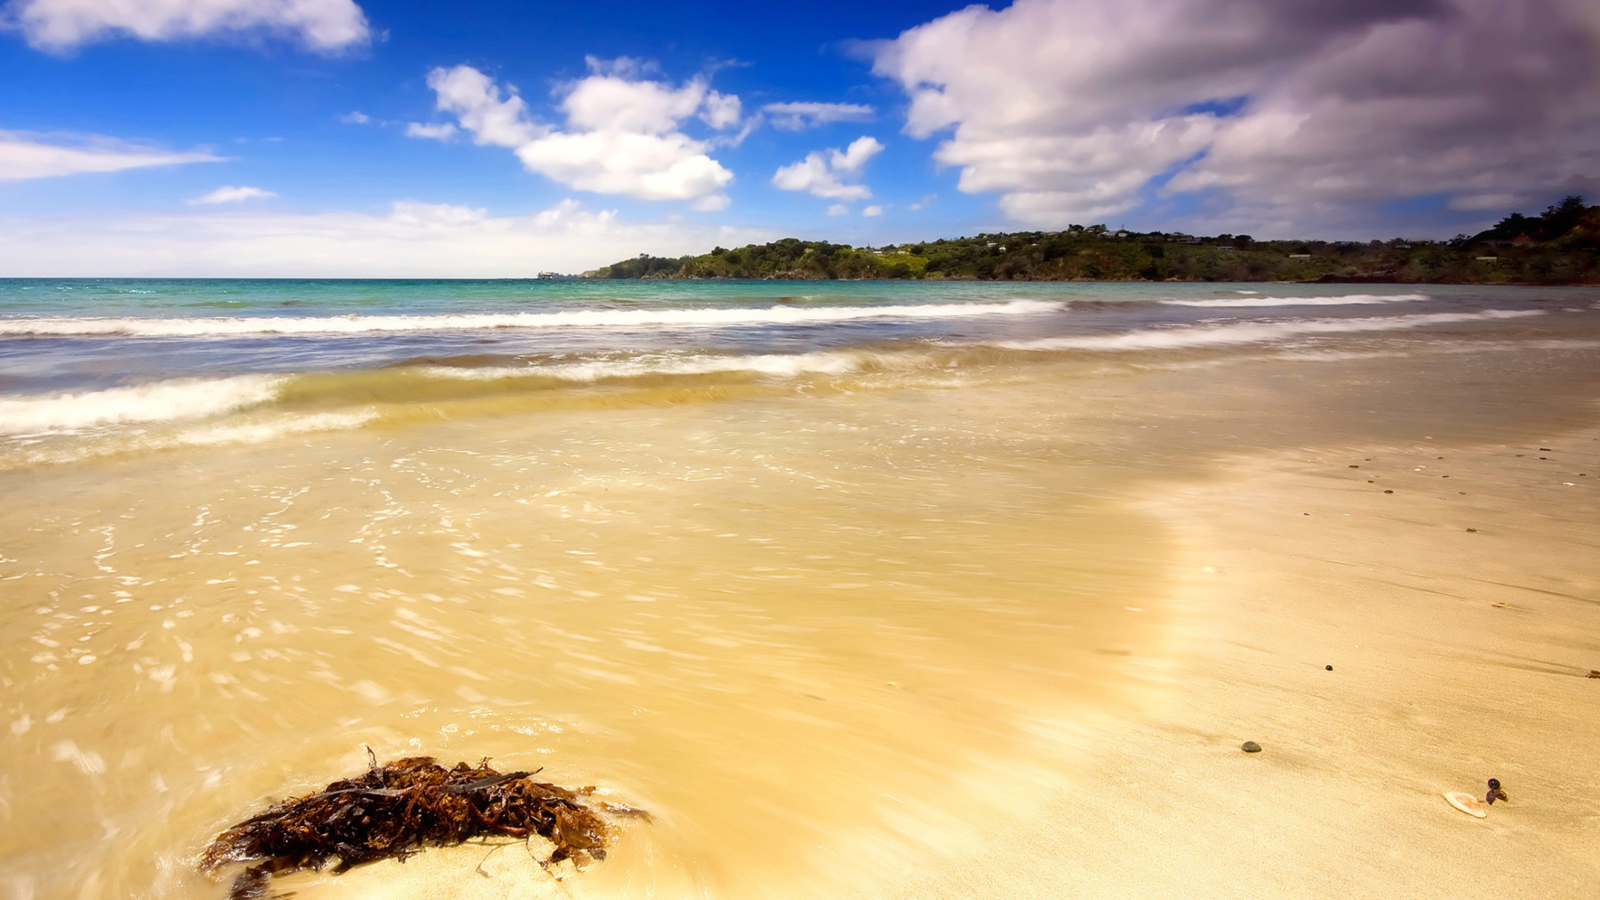 Обои Mauritius Beach 1600x900